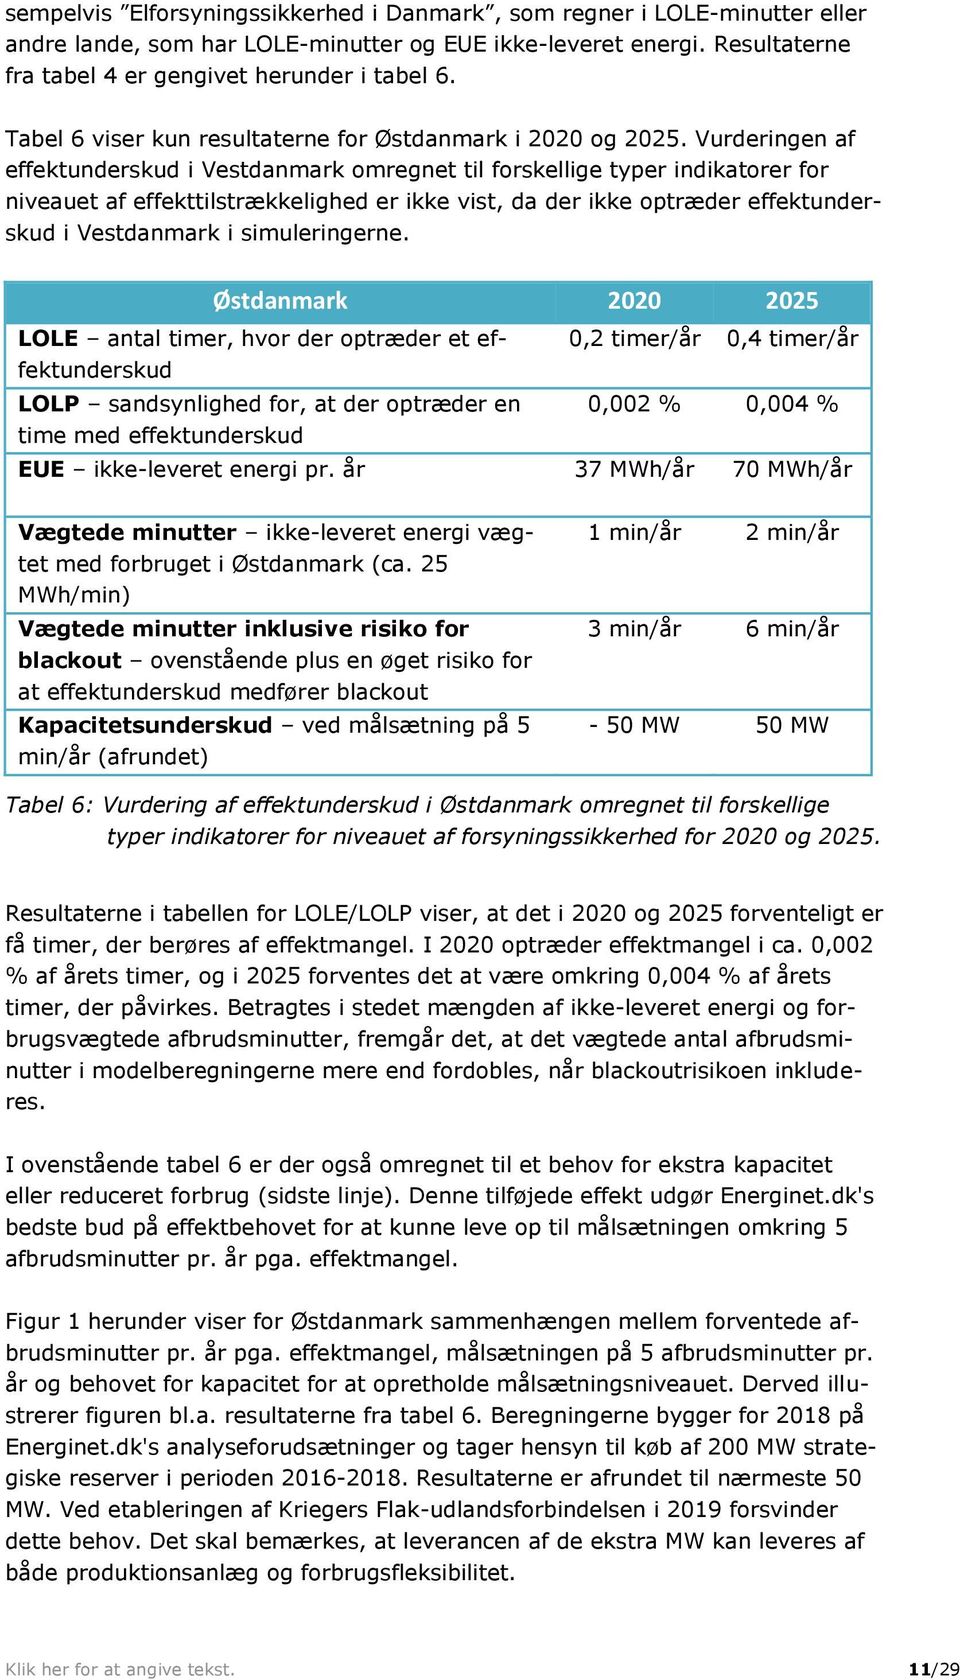 Vurderingen af effektunderskud i Vestdanmark omregnet til forskellige typer indikatorer for niveauet af effekttilstrækkelighed er ikke vist, da der ikke optræder effektunderskud i Vestdanmark i